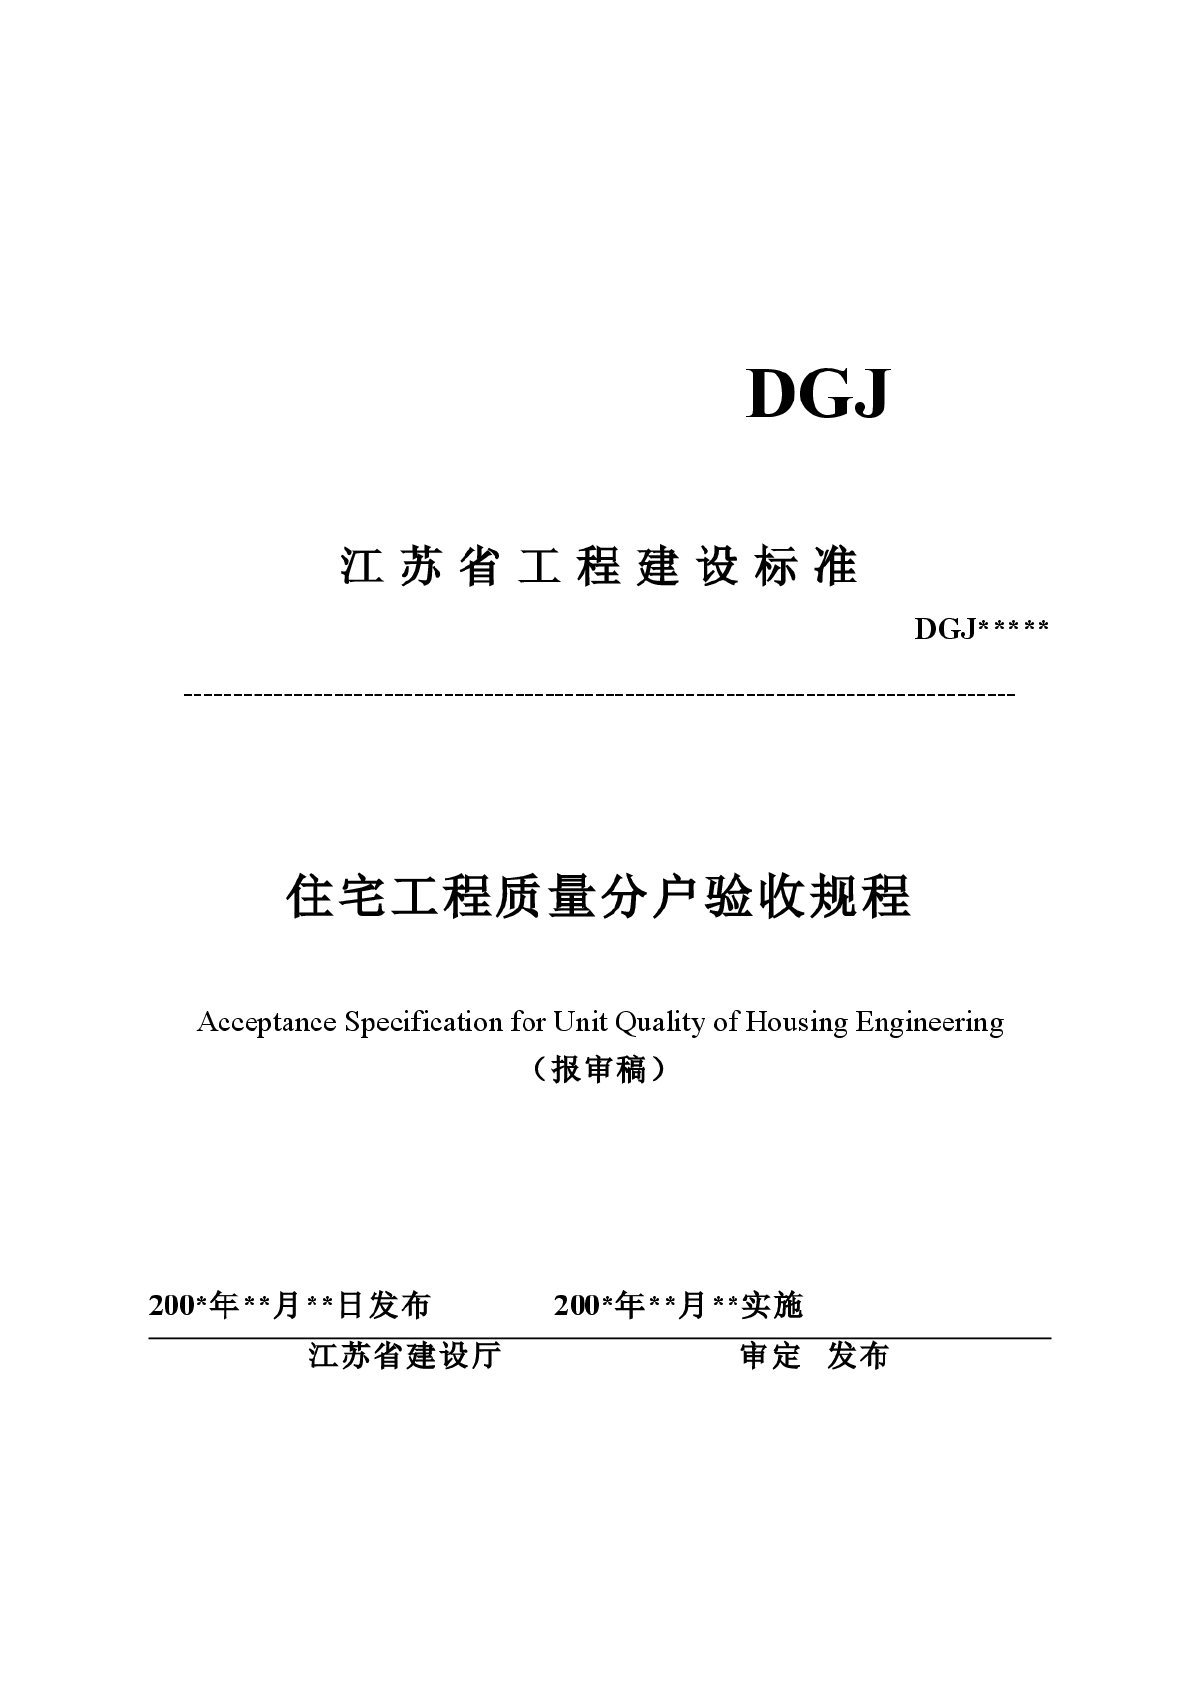 江苏省住宅工程质量分户验收规程（报审稿）DGJ